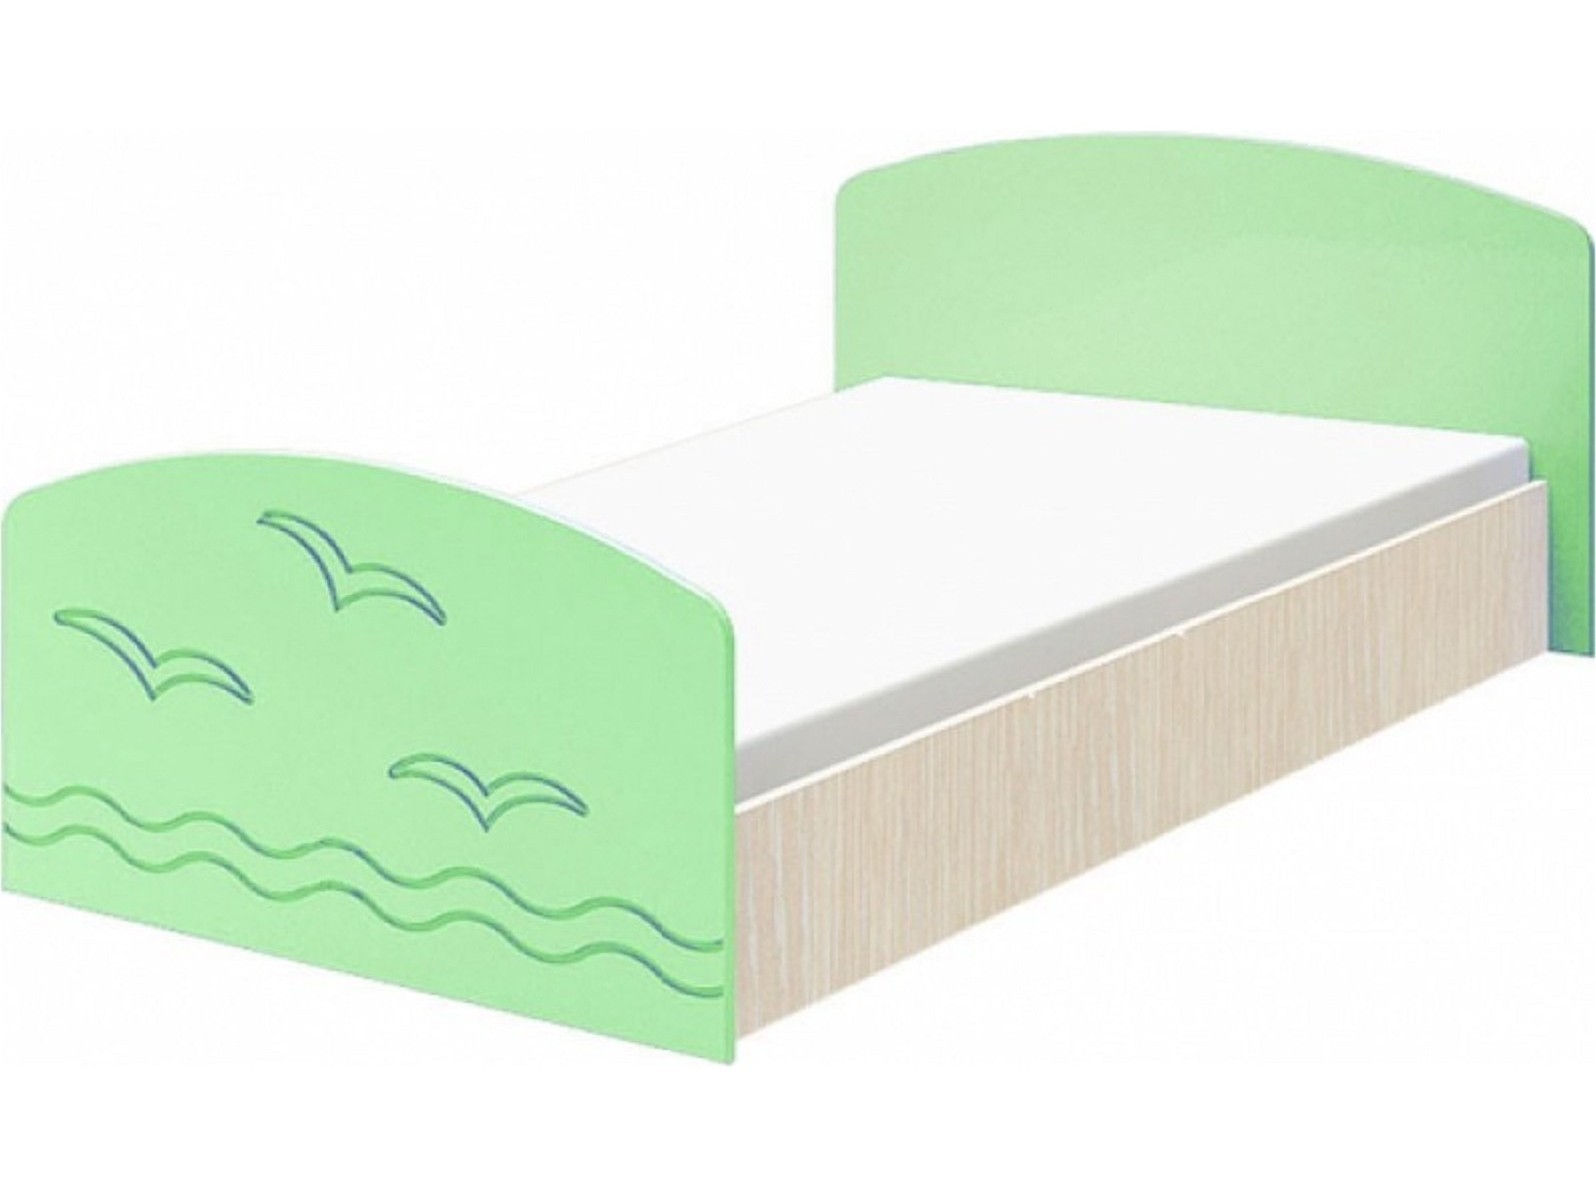 Юниор-2 Детская кровать 80, матовый (Салатовый, Дуб белёный) Зеленый, МДФ, ЛДСП юниор 2 детская кровать 80 матовый розовый дуб белёный розовый мдф лдсп